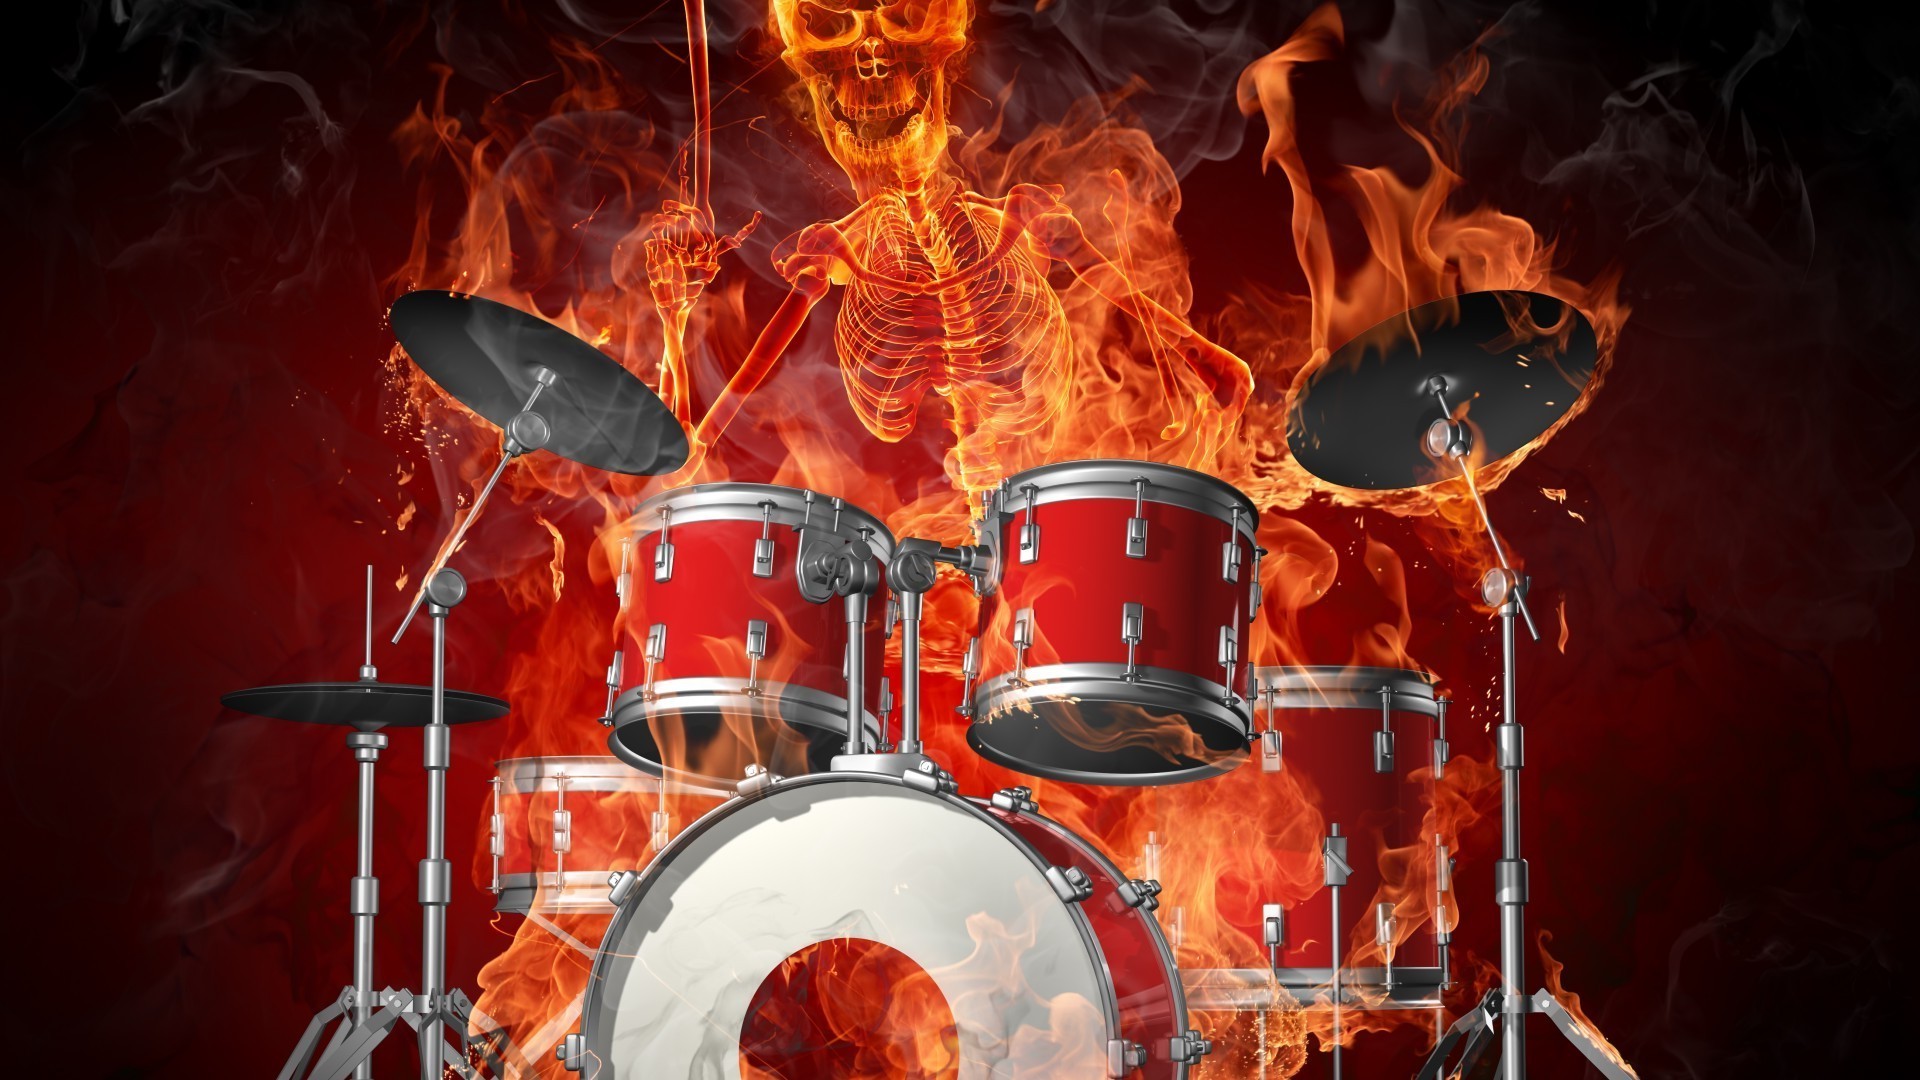 музыкальные инструменты барабан музыка барабанщик ударный инструмент фестиваль производительности музыкант группа концерт пламя тарелки звук